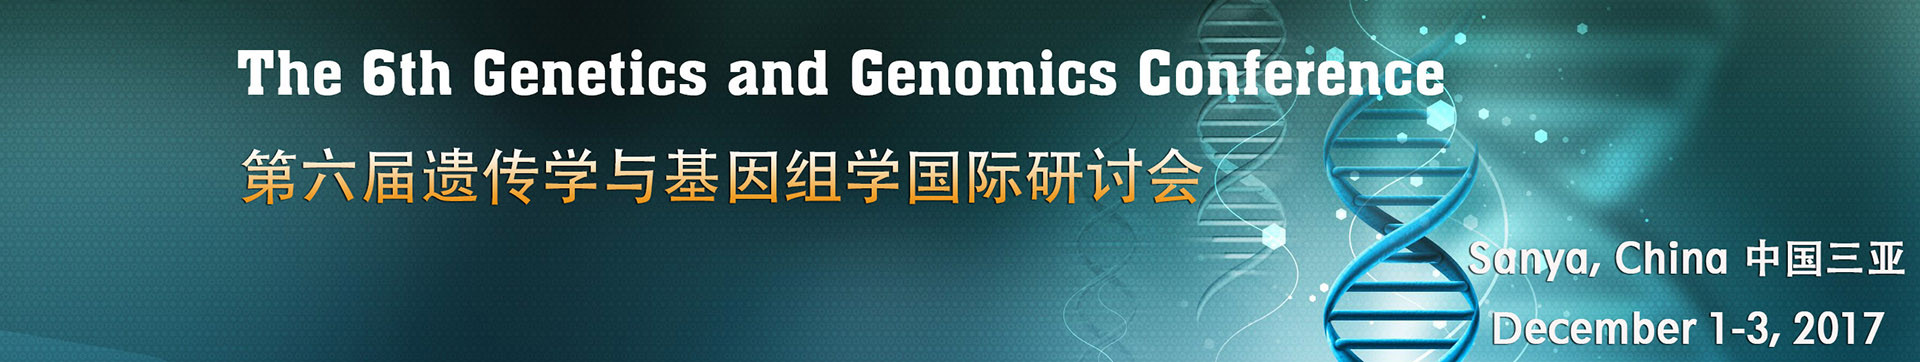 第六届遗传学与基因组学国际研讨会(GC 2017)